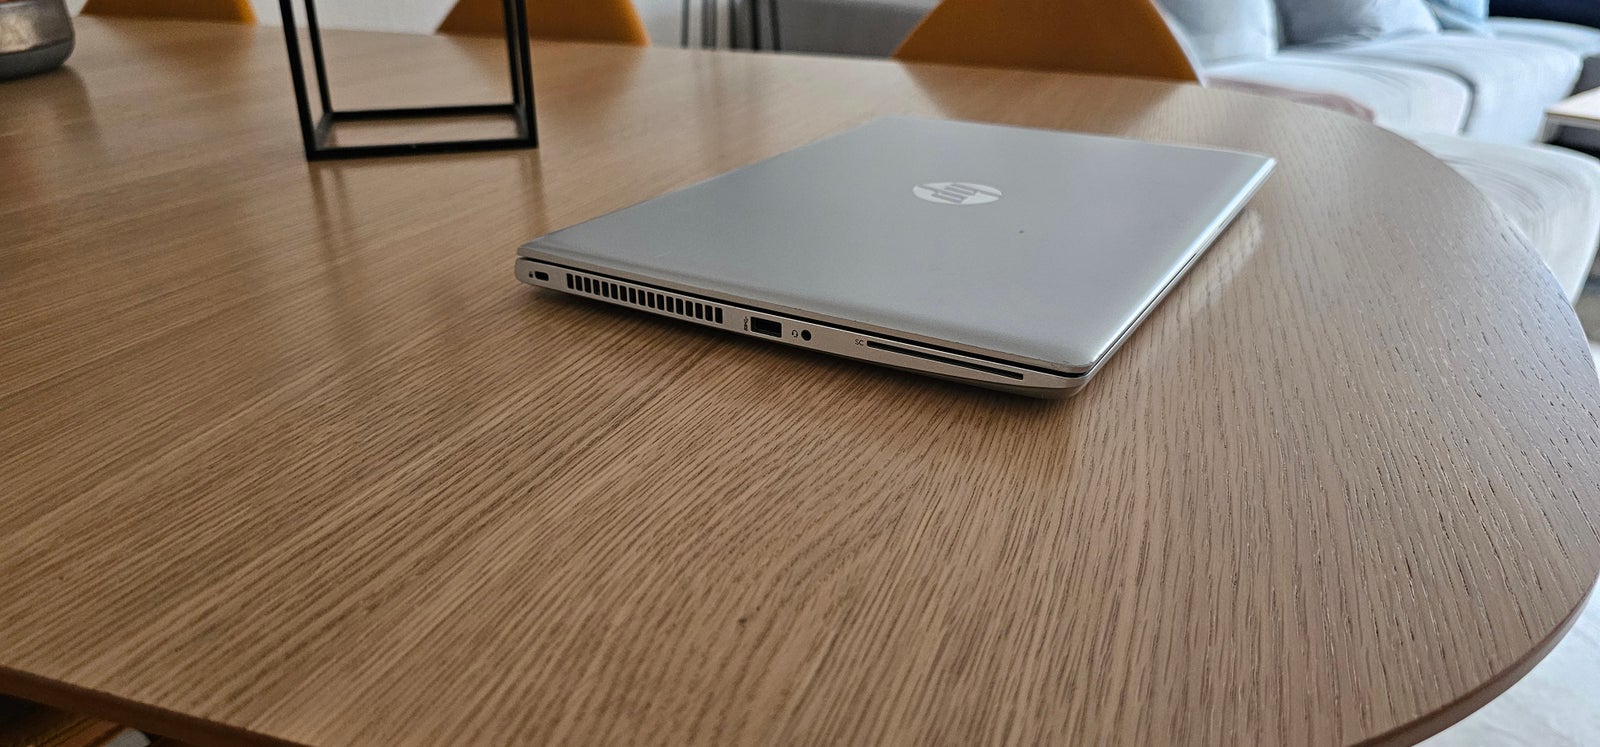 HP ProBook 640 G4, Intel(R) Core(TM) i5-7300U CPU @ 2.60GHz